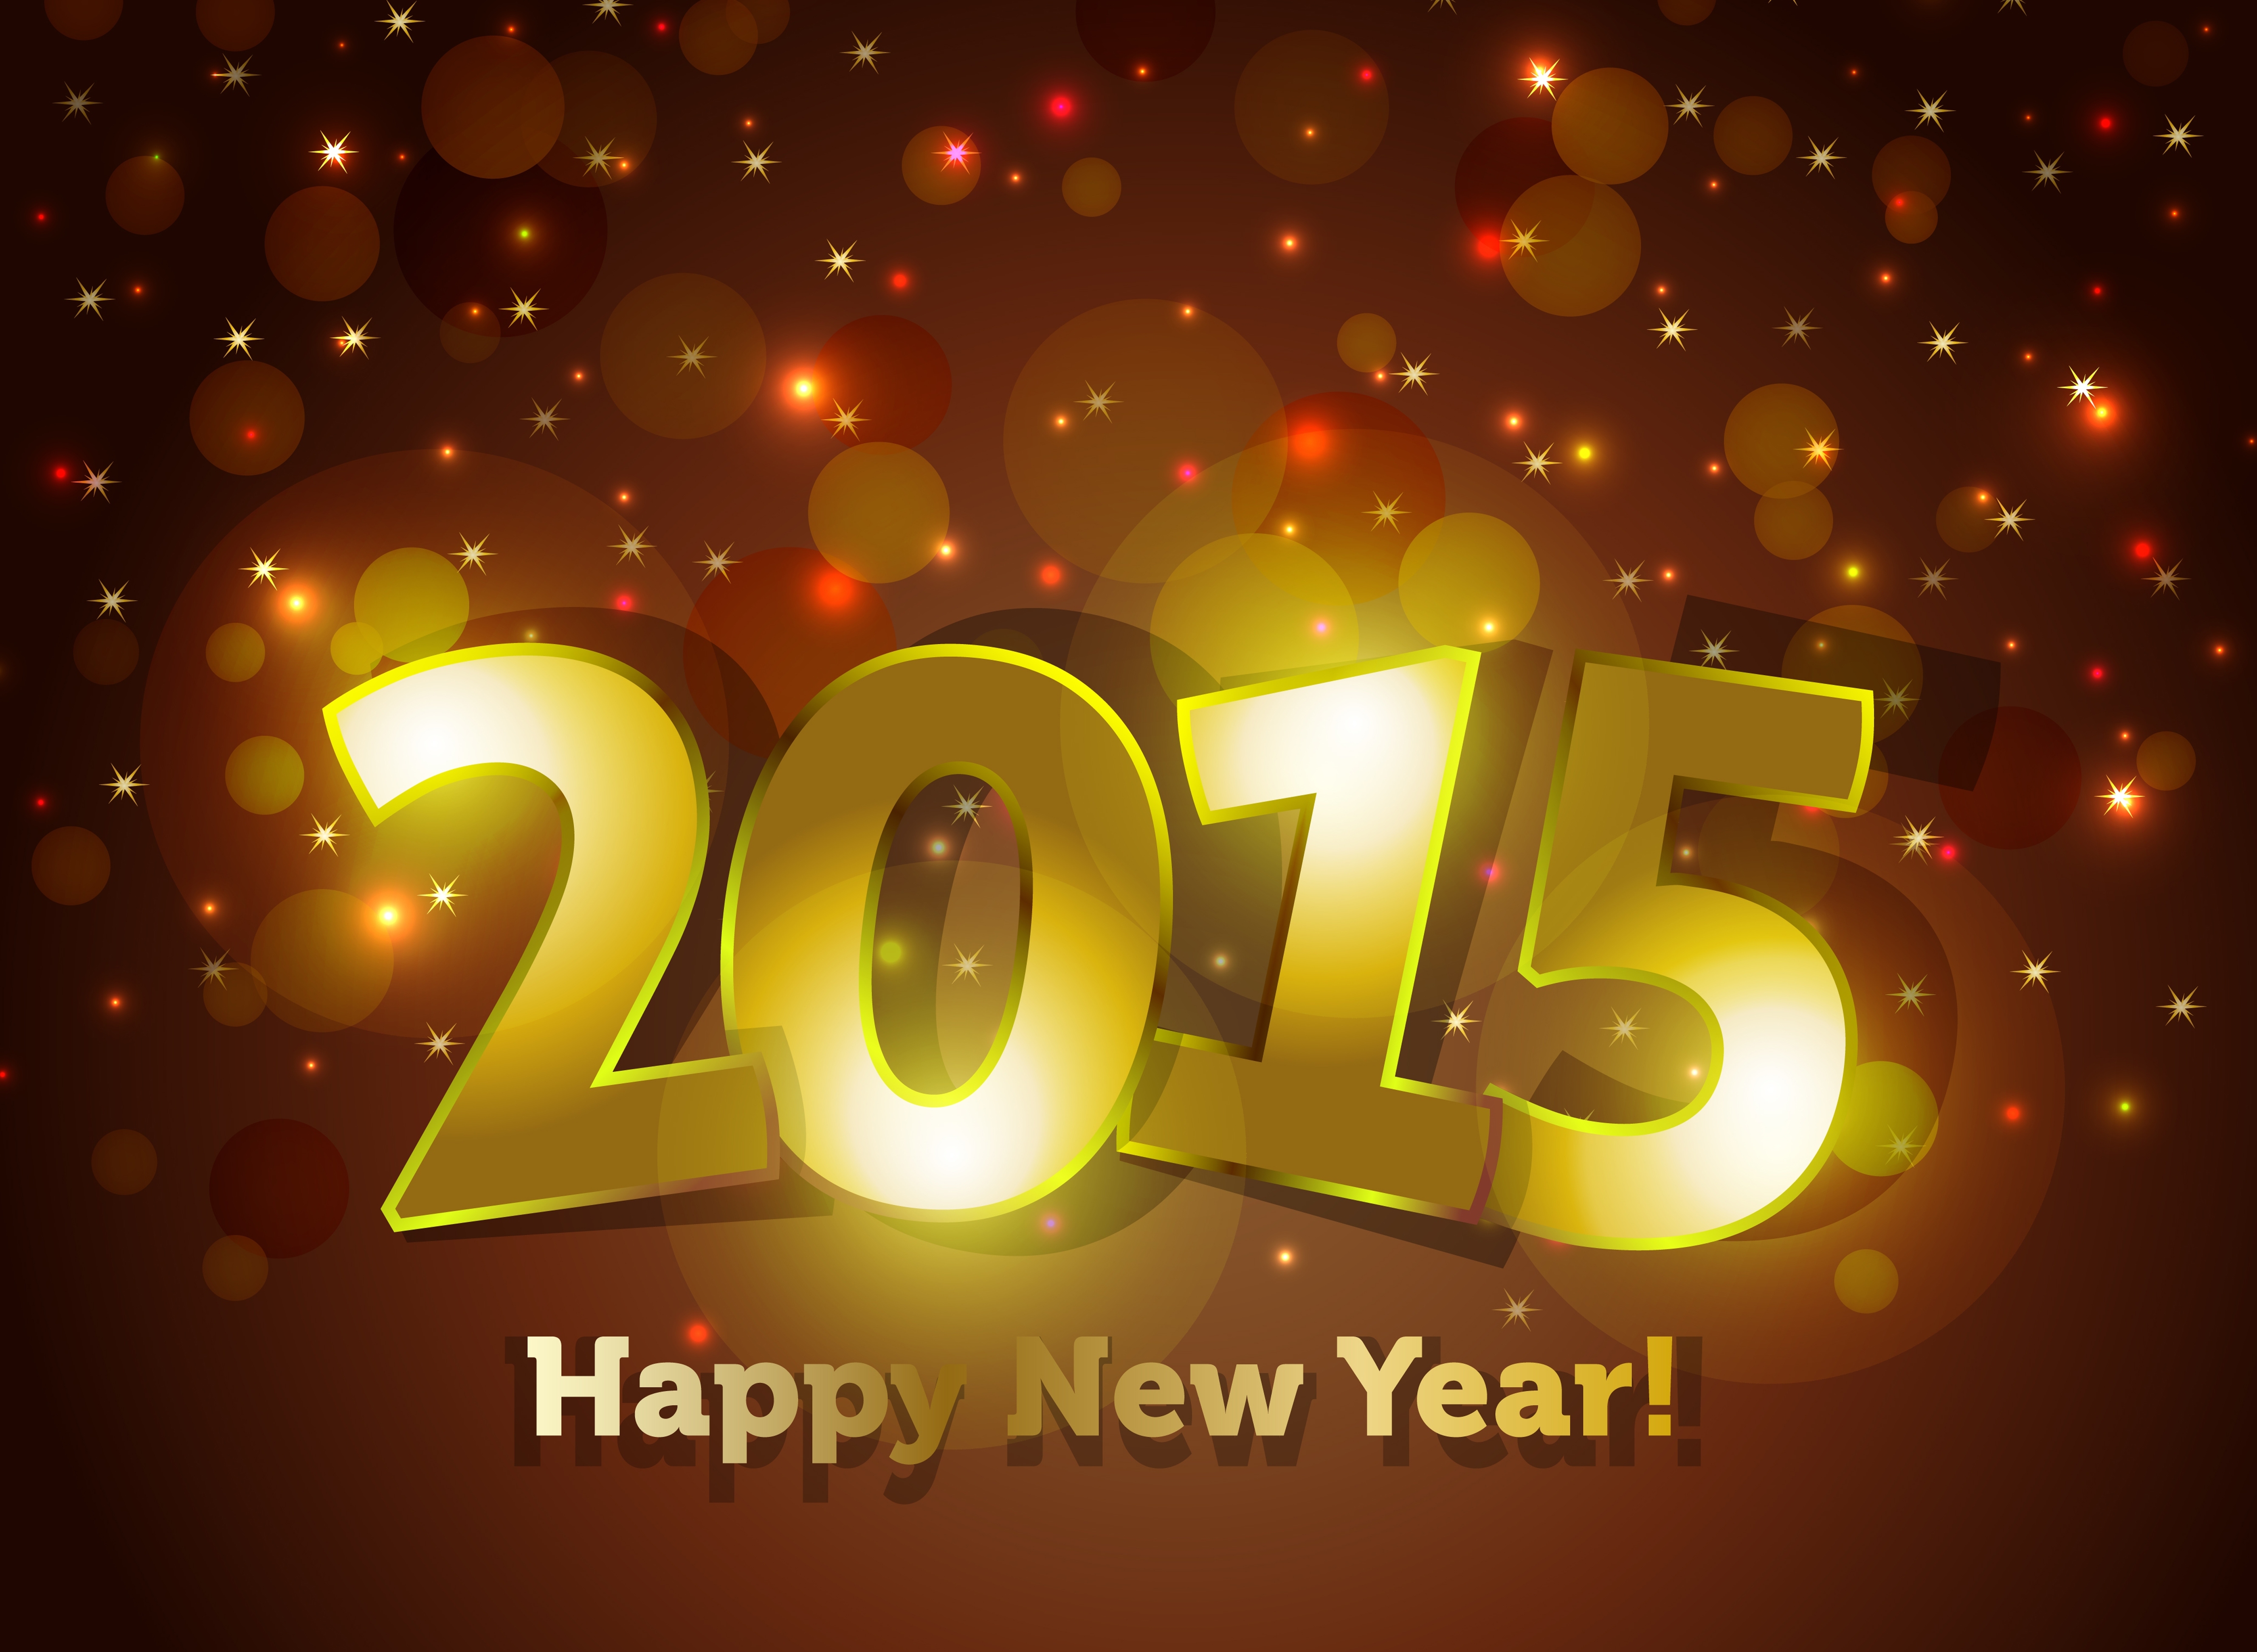 29 3 в 2016 году. Новый год 2015. Картинки новый год 2015. С новым годом 2015 картинки. Новогодние открытки 2015.